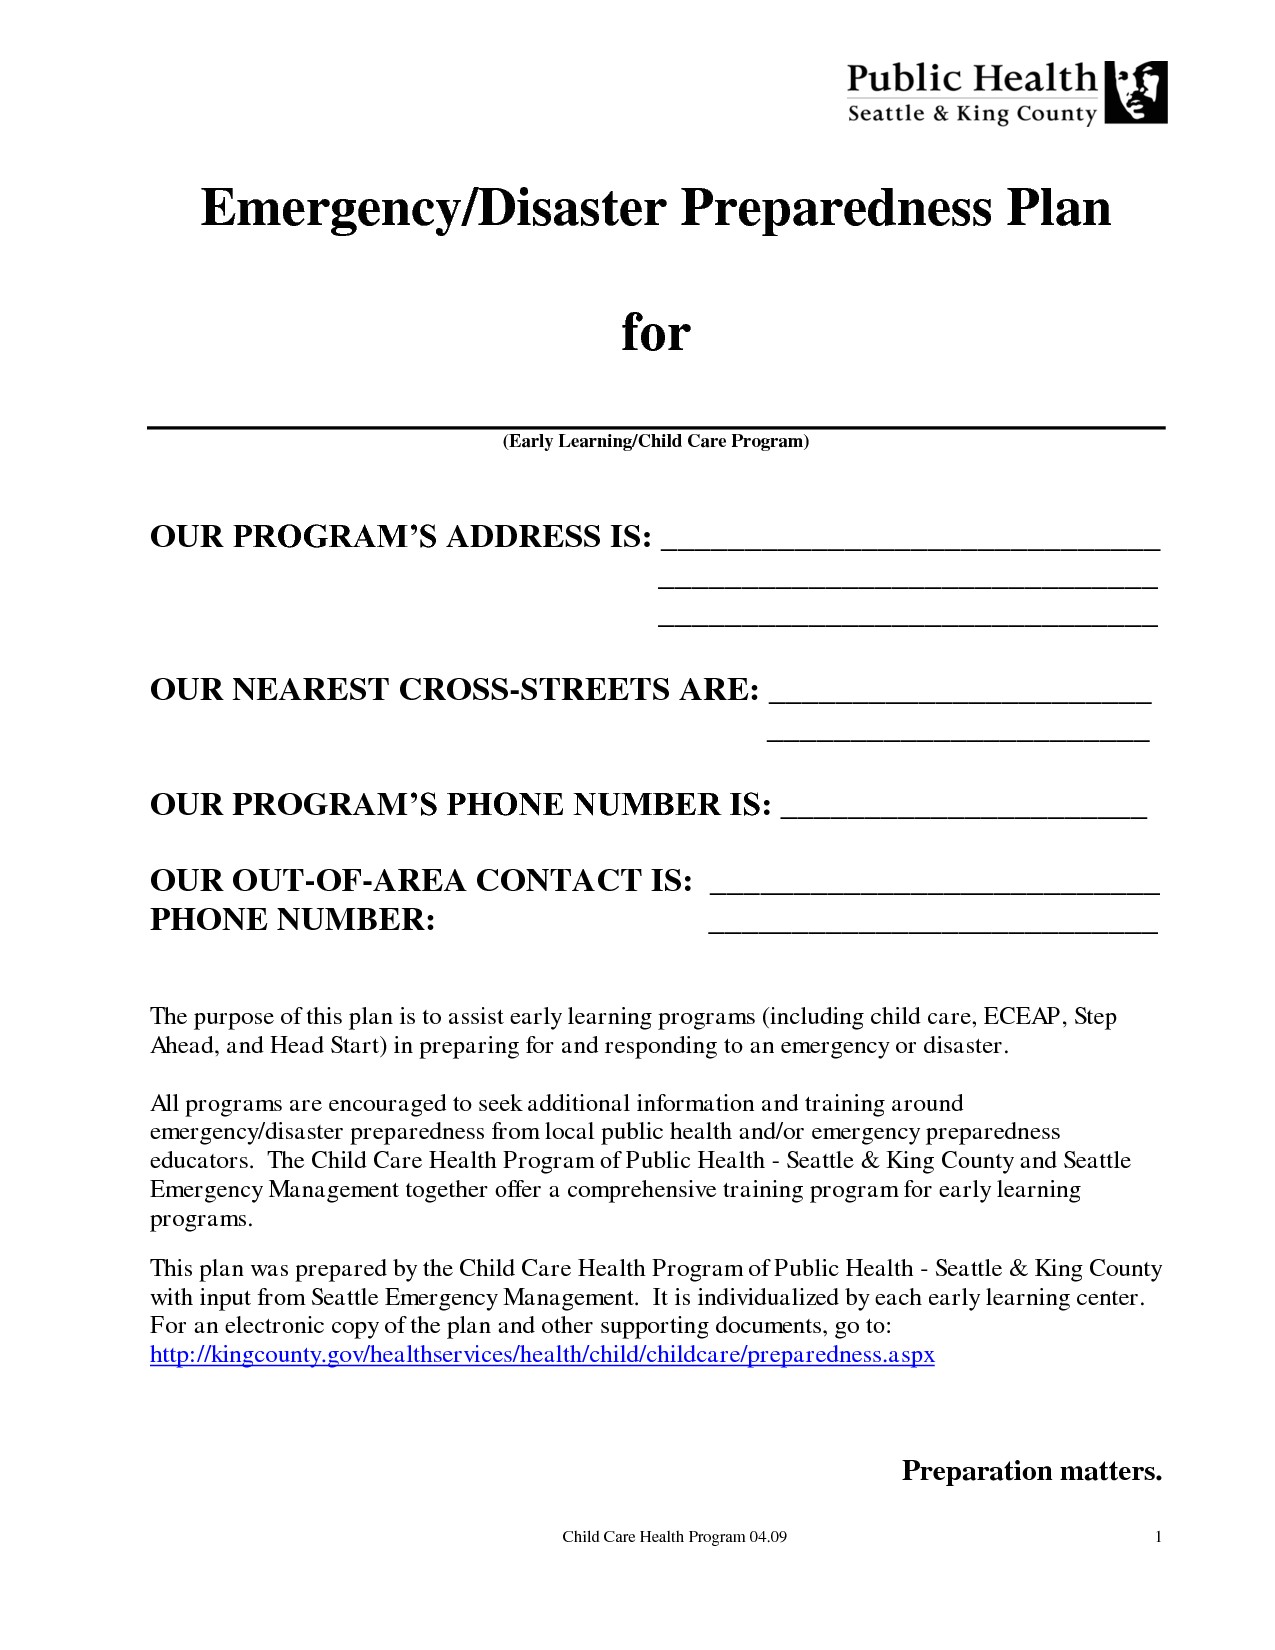 post disaster preparedness plan sample 295381